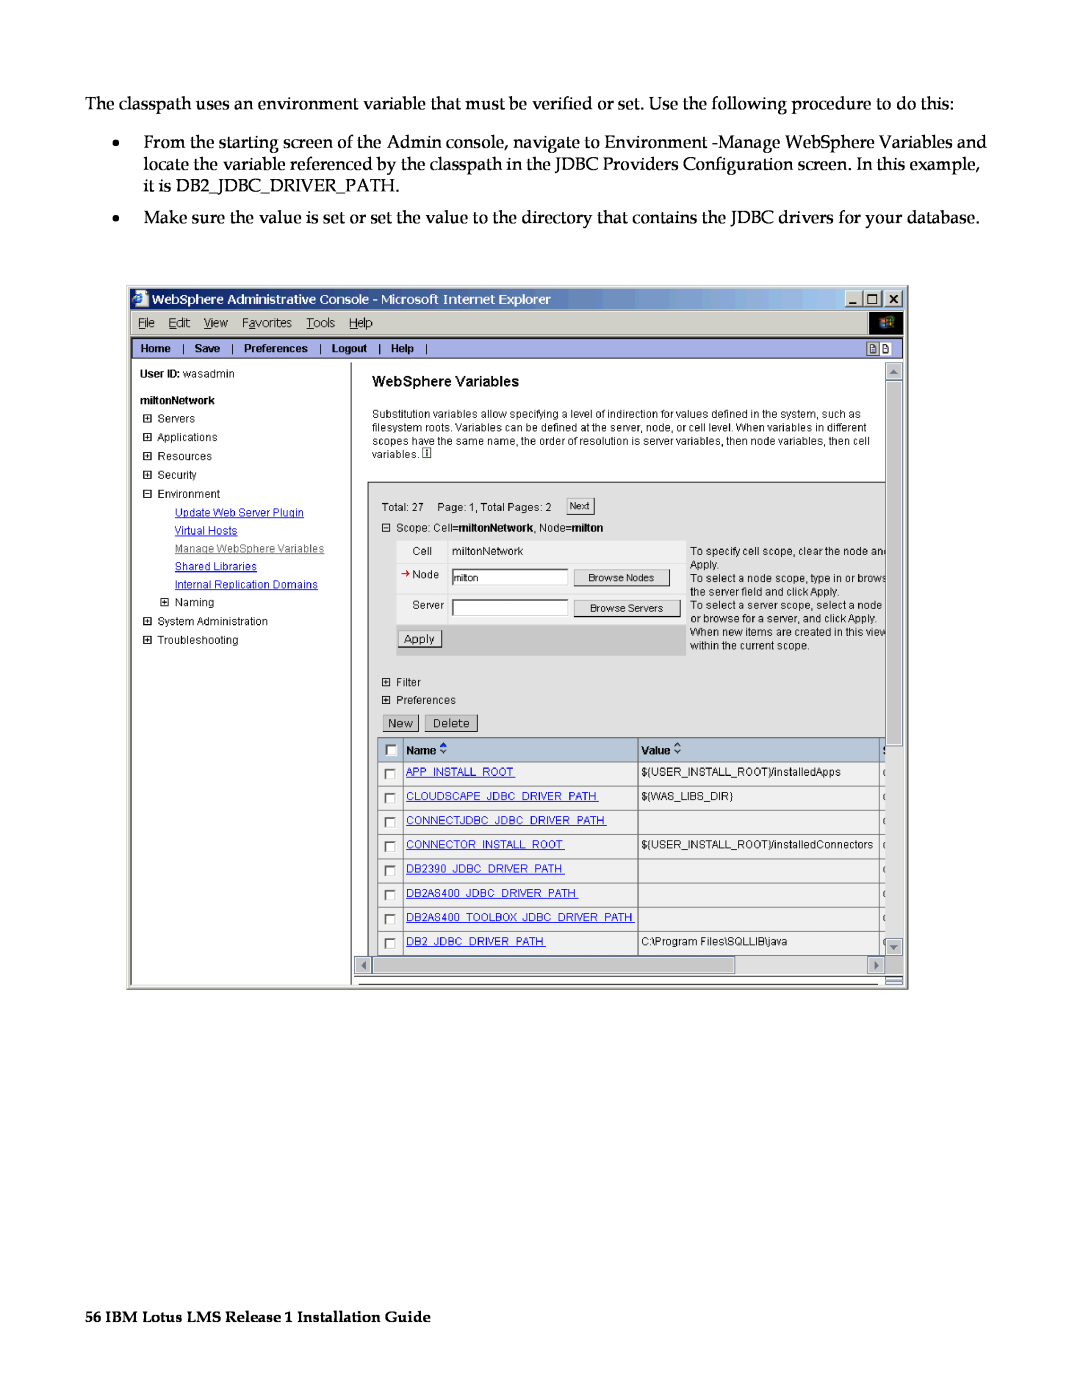 IBM G210-1784-00 manual IBM Lotus LMS Release 1 Installation Guide 